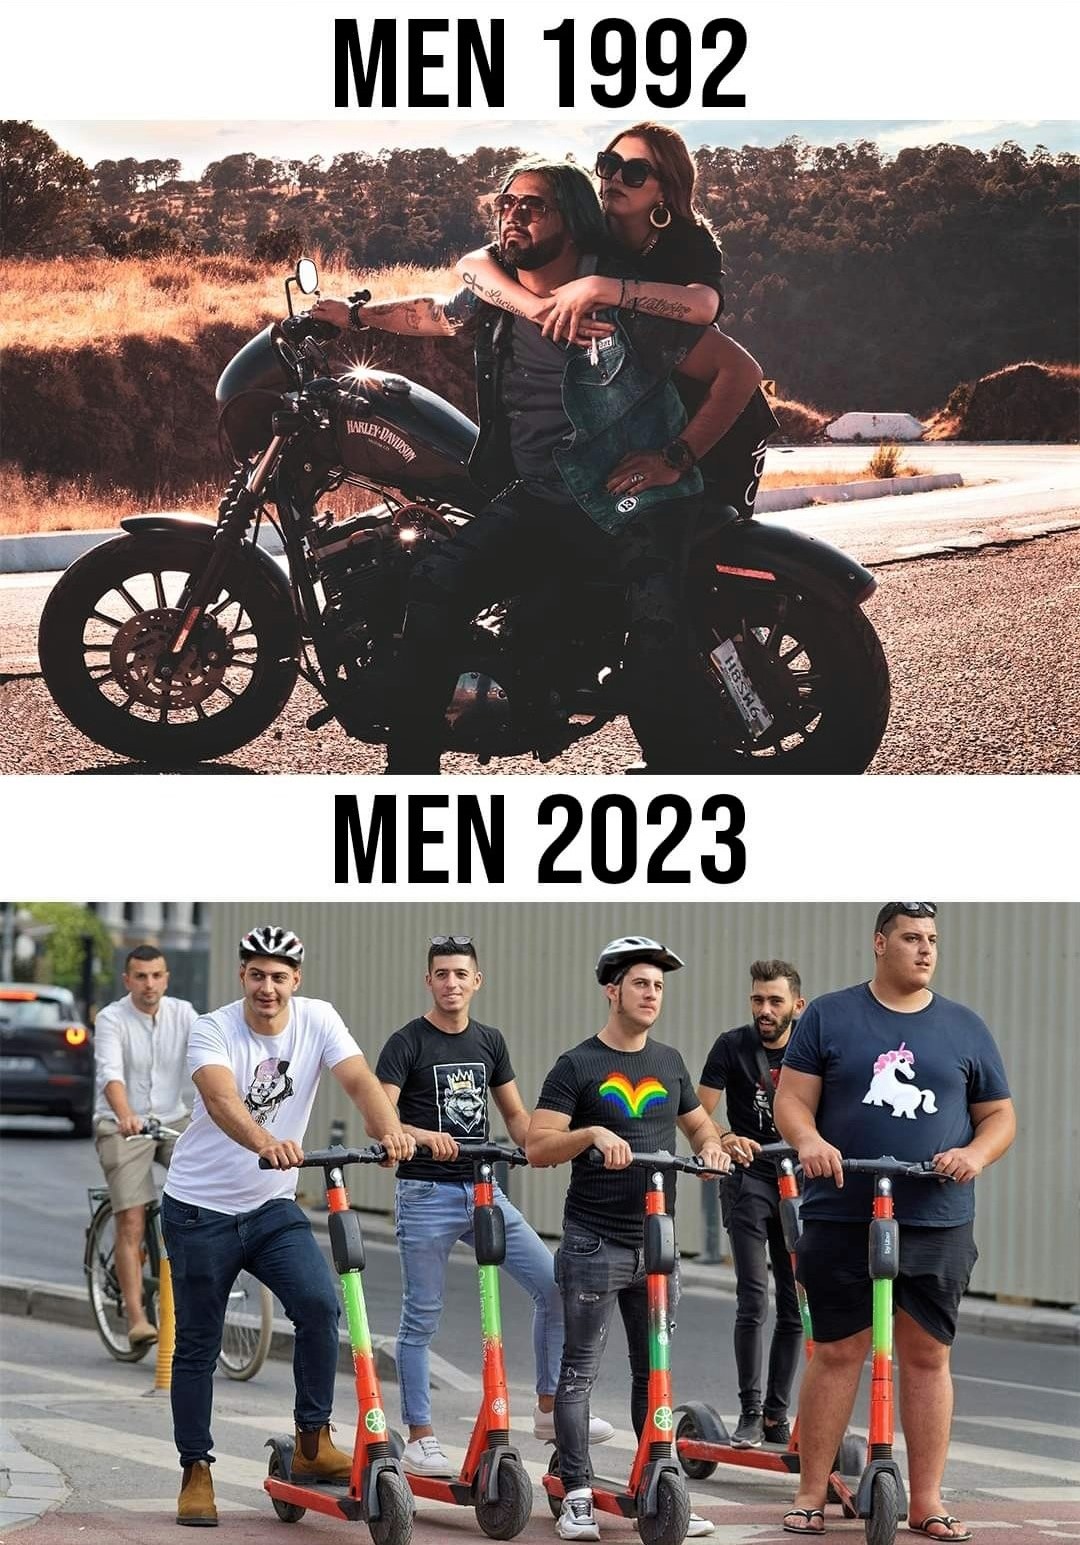 Men 1992 - Men 2023.jpg